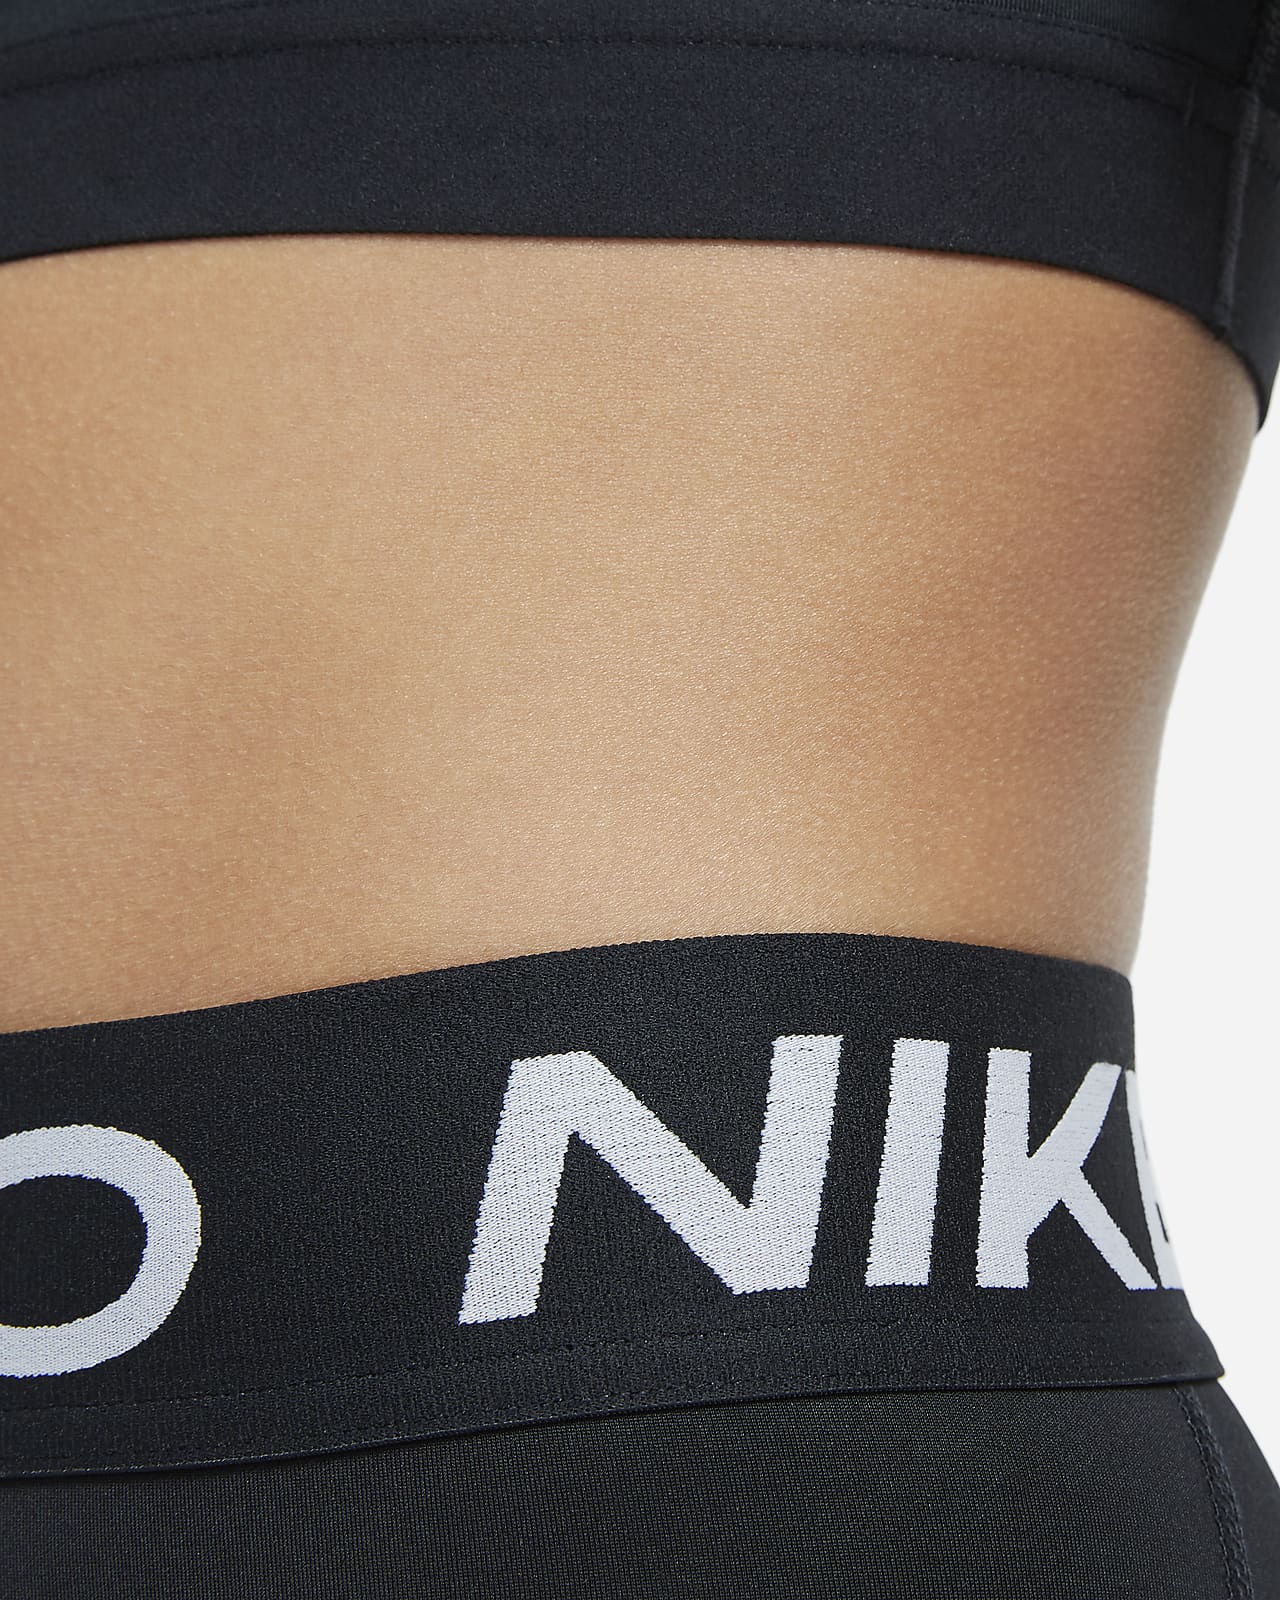 Bestel hier uw Nike Pro Dri-Fit sportlegging dames capri